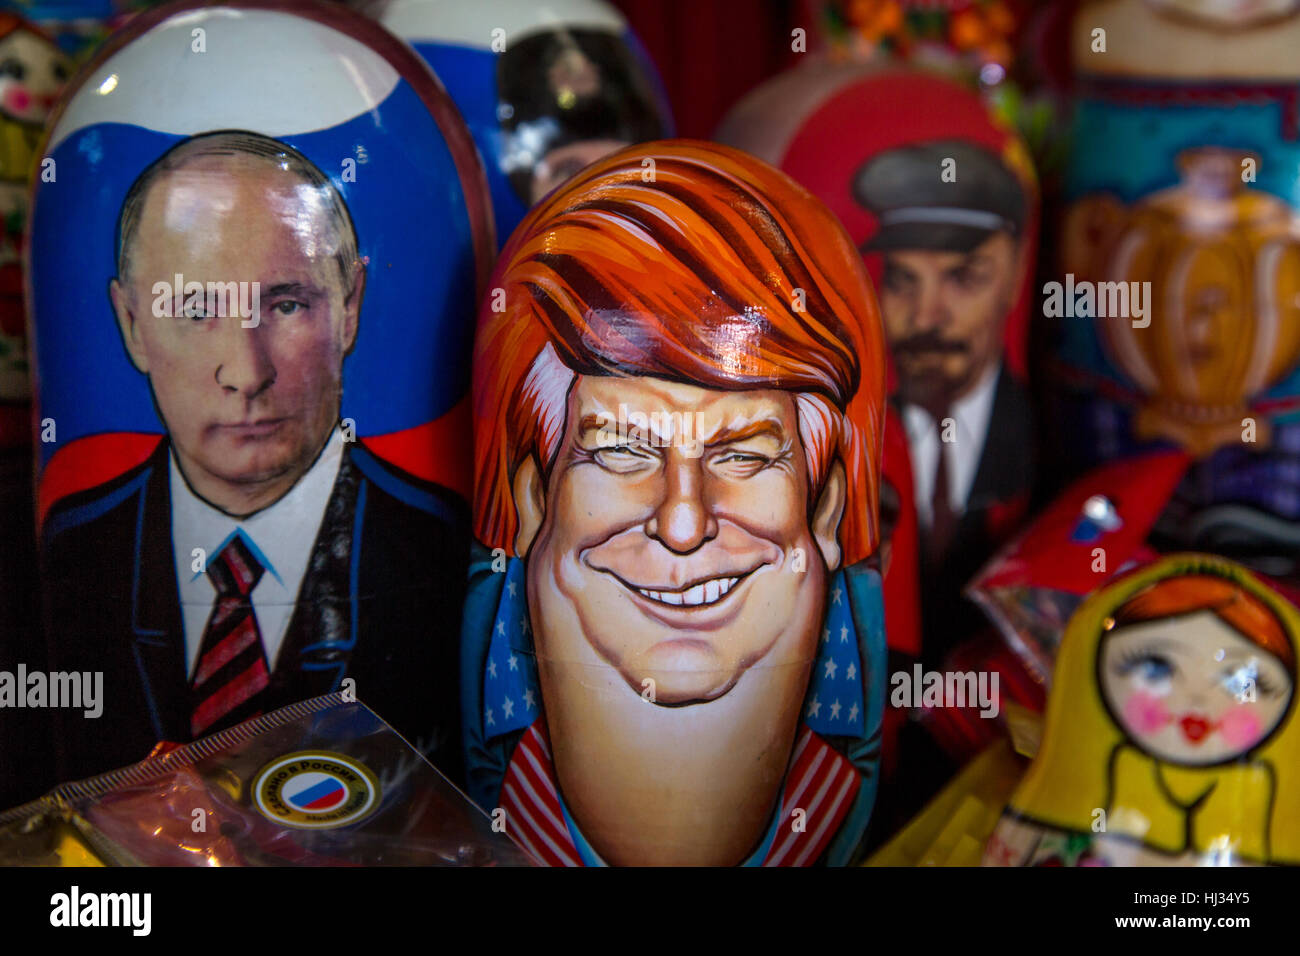 Russische traditionelle Spielwaren - Matroschka mit einem Porträt von Donald Trump in Souvenir-Kiosk auf dem Roten Platz in Moskau, Russland Stockfoto